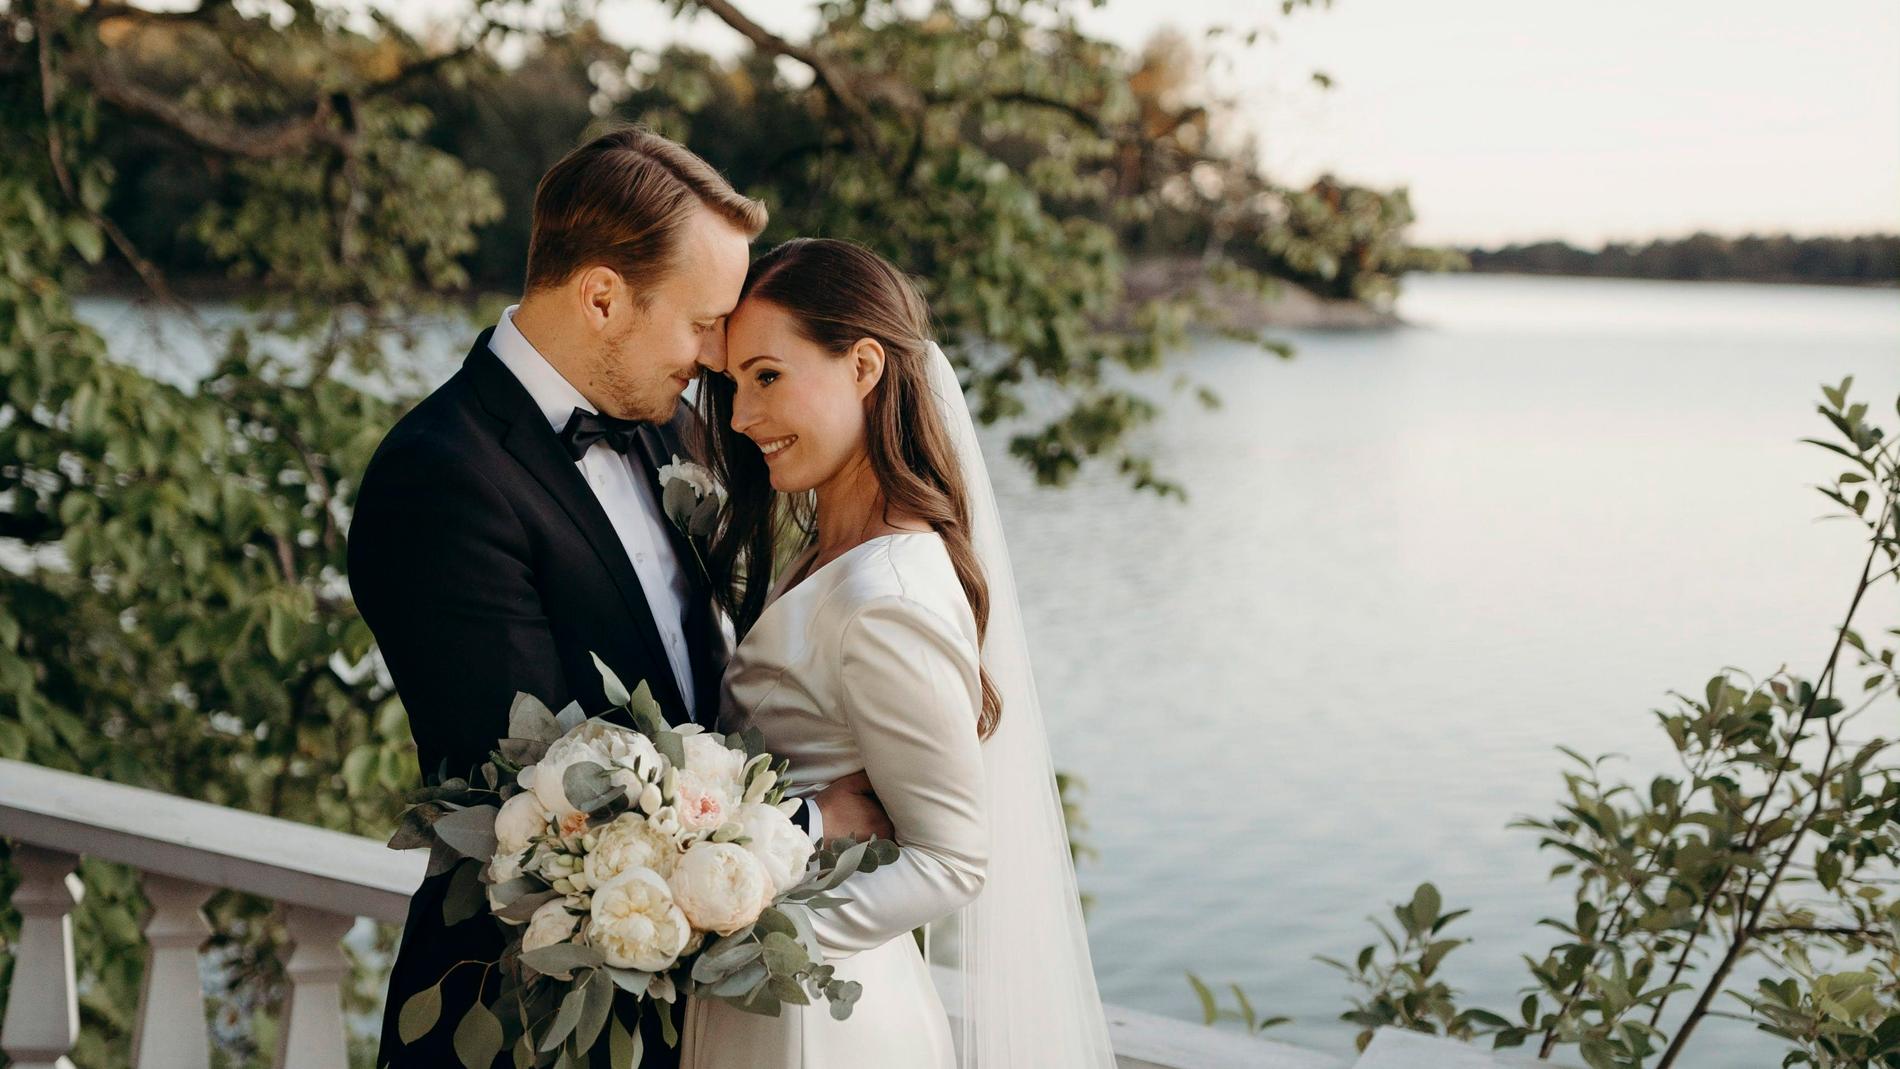 Finlands statsminister Sanna Marin och fotbollsspelaren Markus Räikkönen har knutit äktenskapsband.